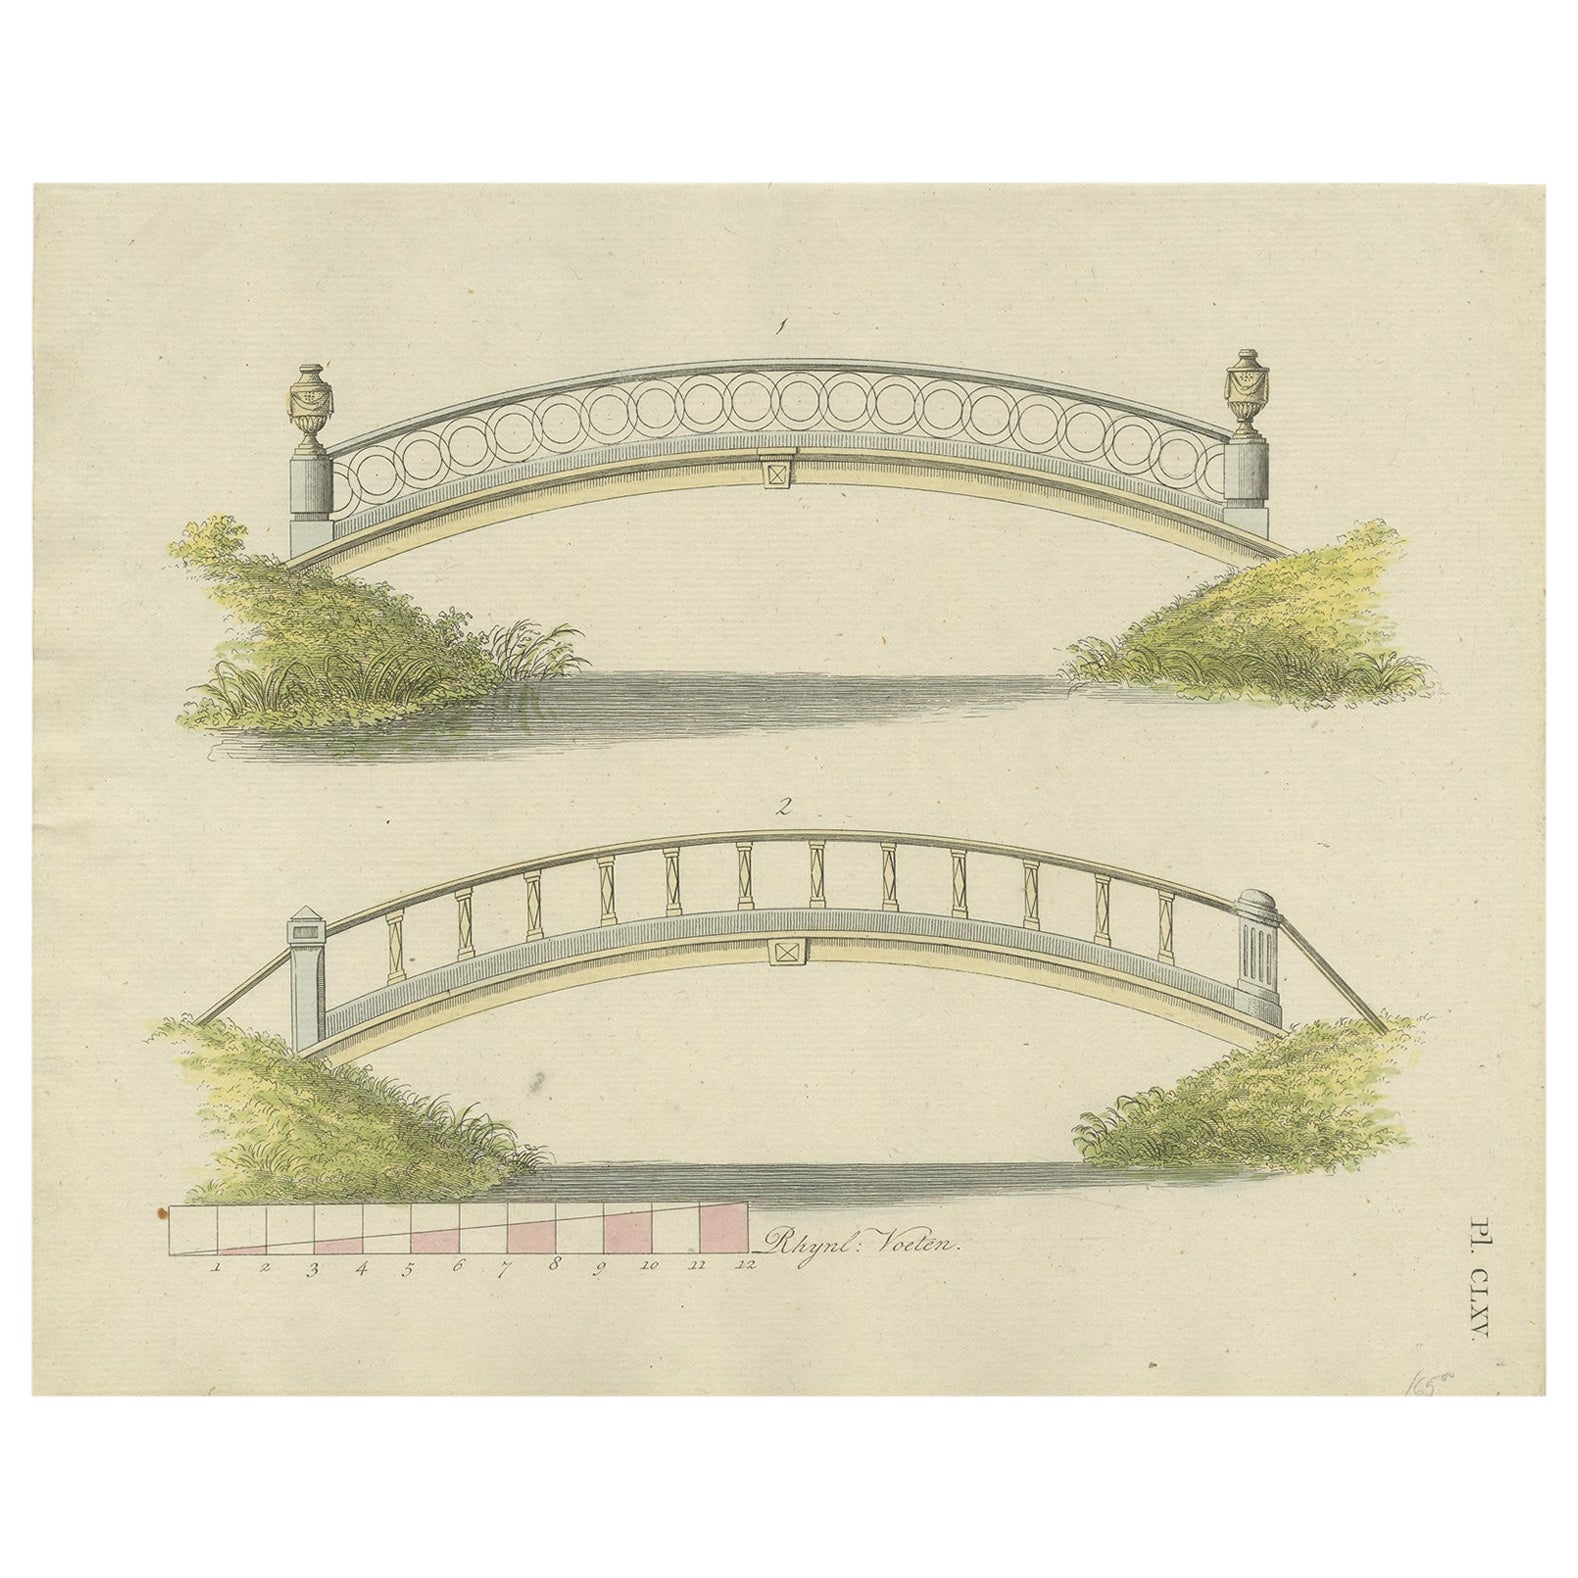 Antique Print of Garden Architecture showing a Garden Bridge by Van Laar, 1802